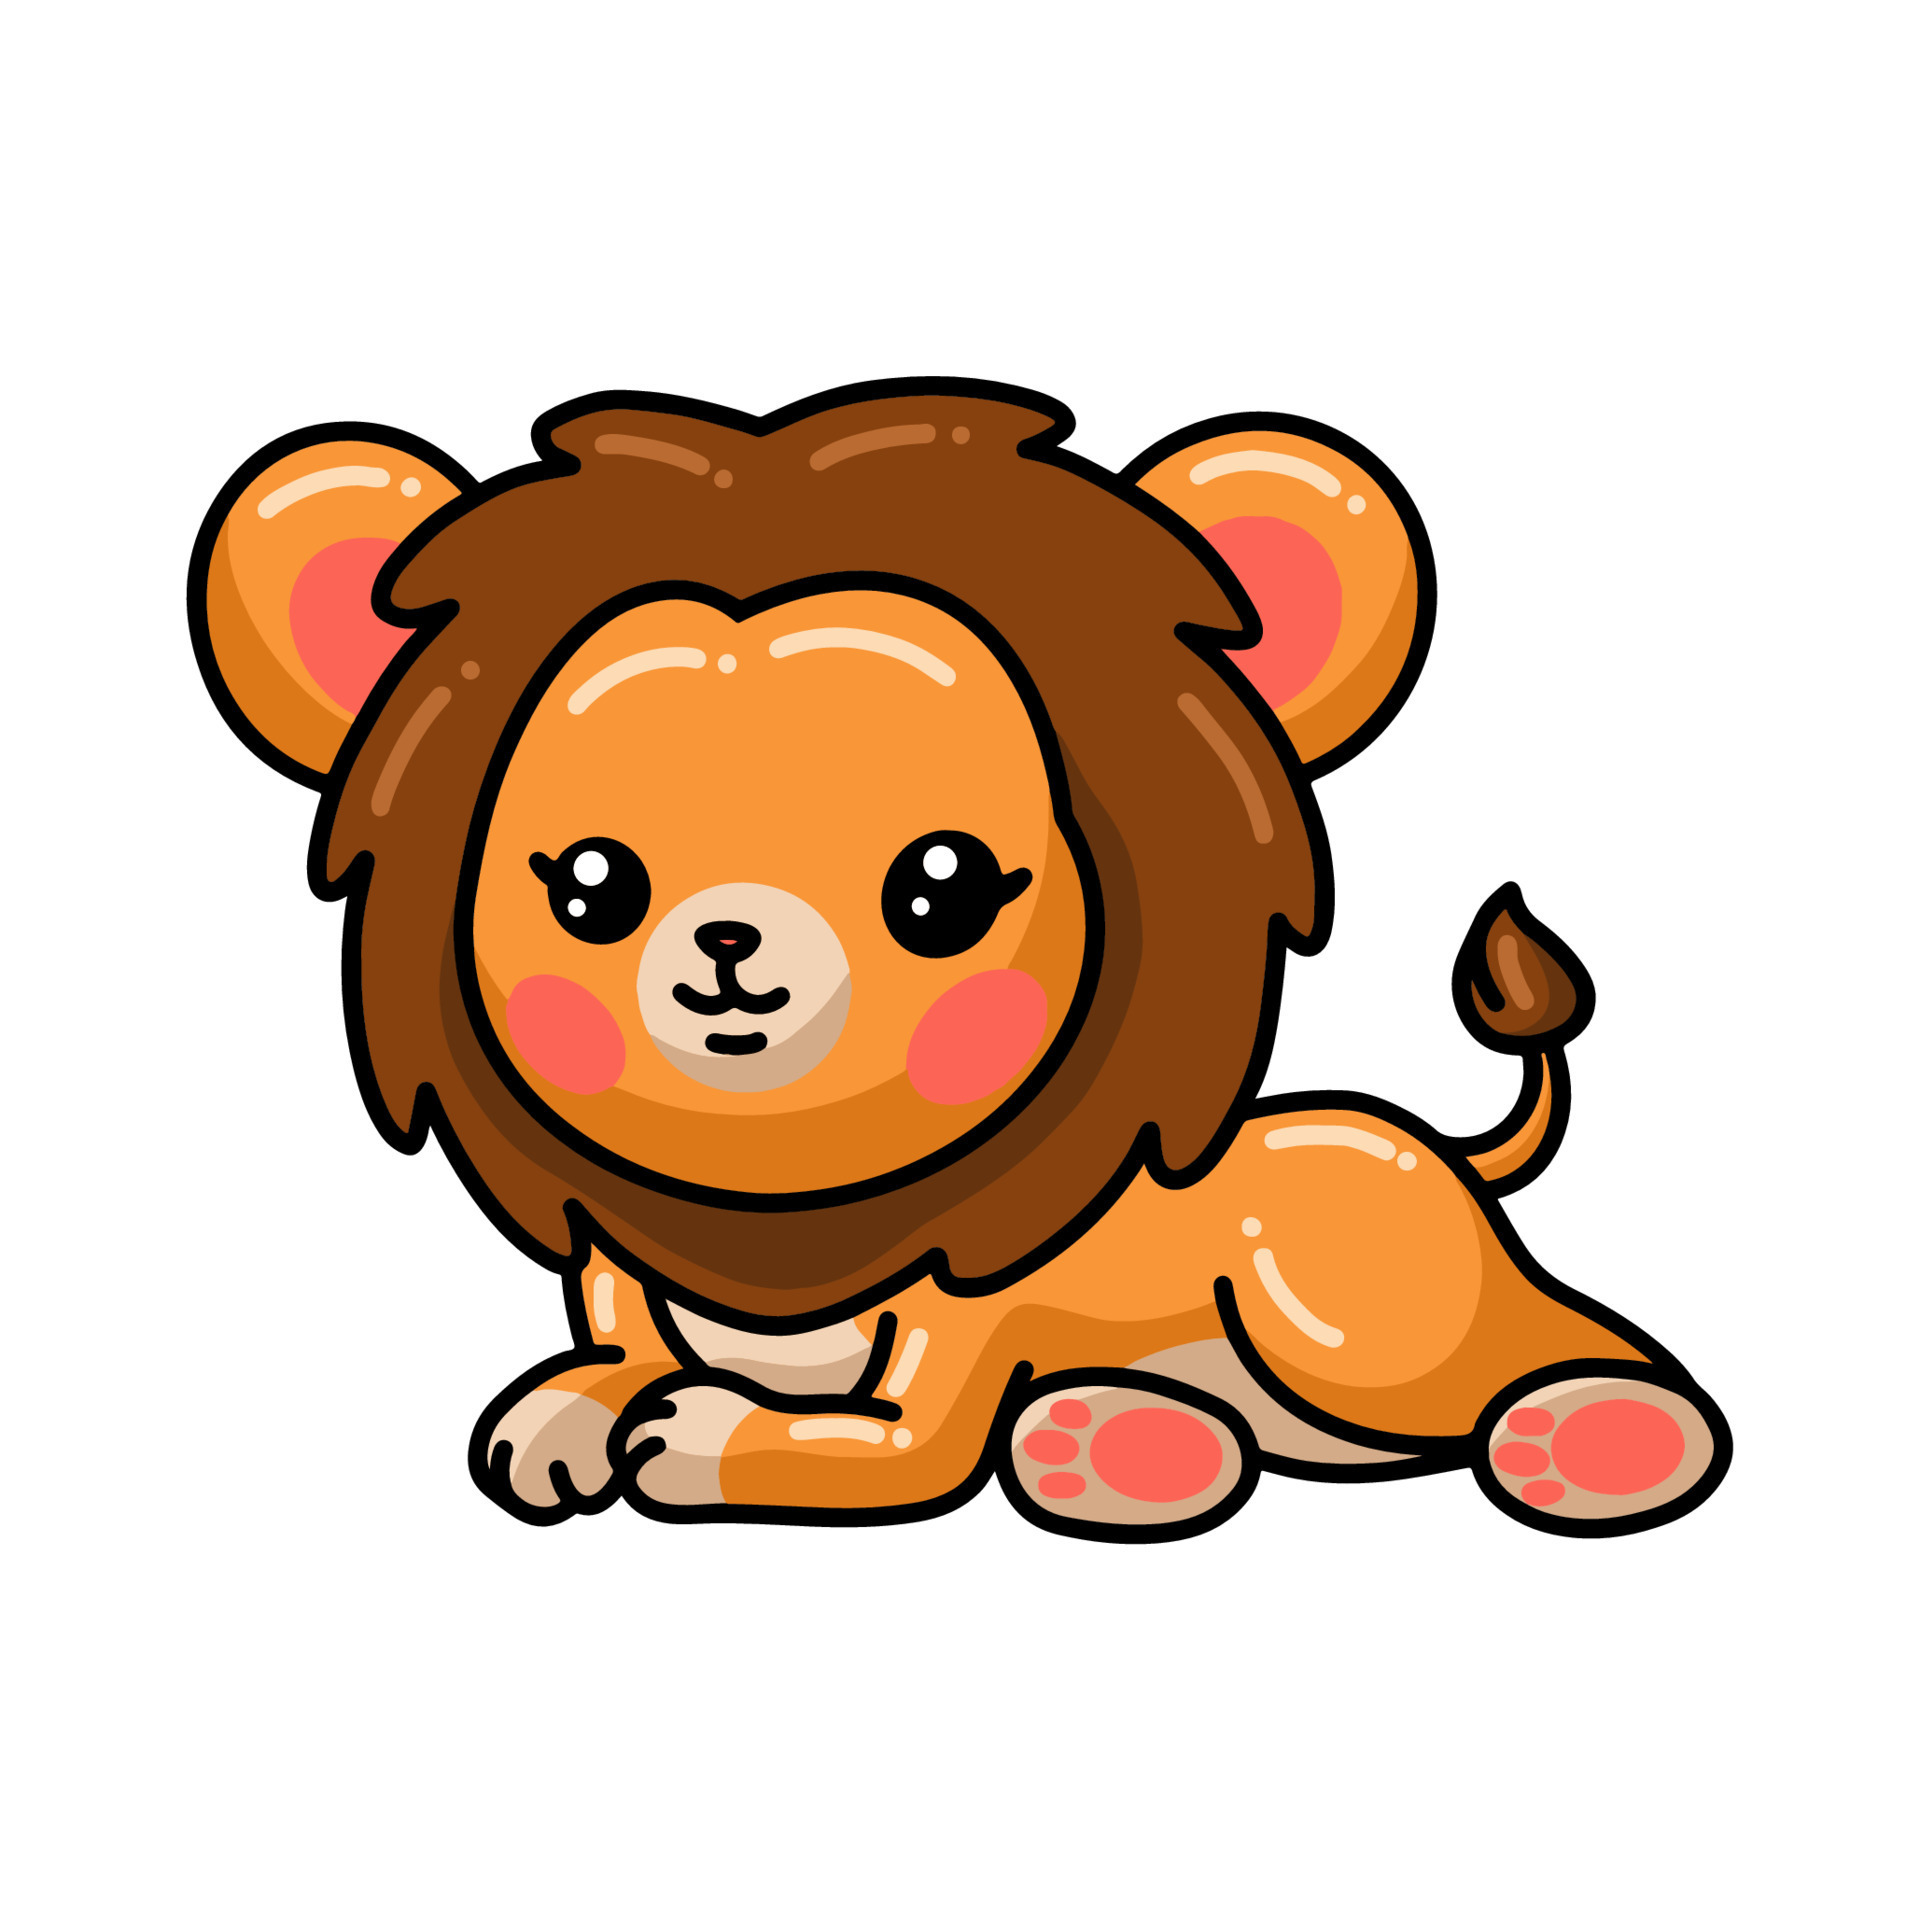 Cute little lion cartoon laying down 9876674 Vector Art at Vecteezy